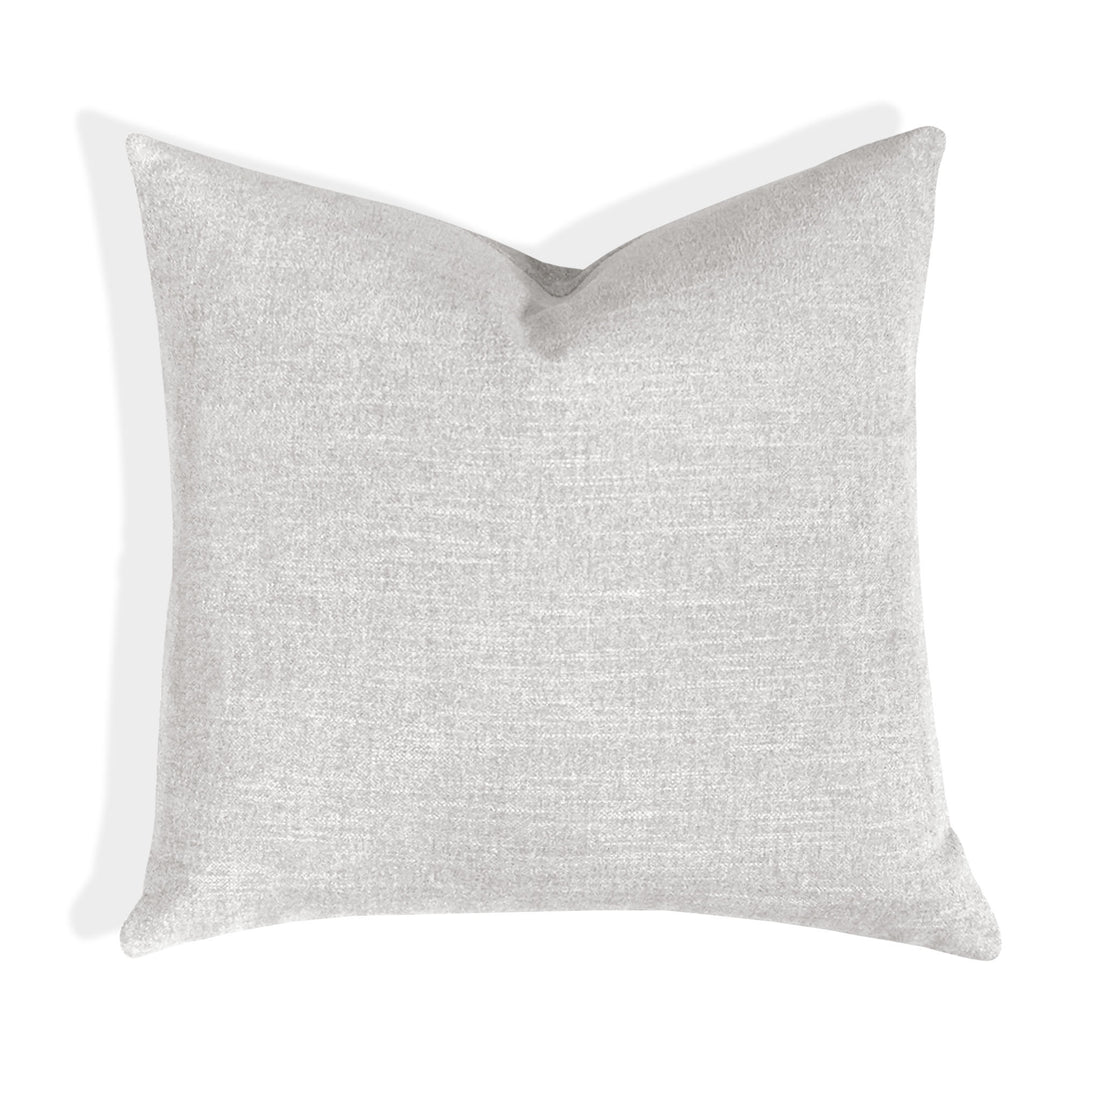 Vidara Chenille Throw Pillow Cover | 20" x 20"